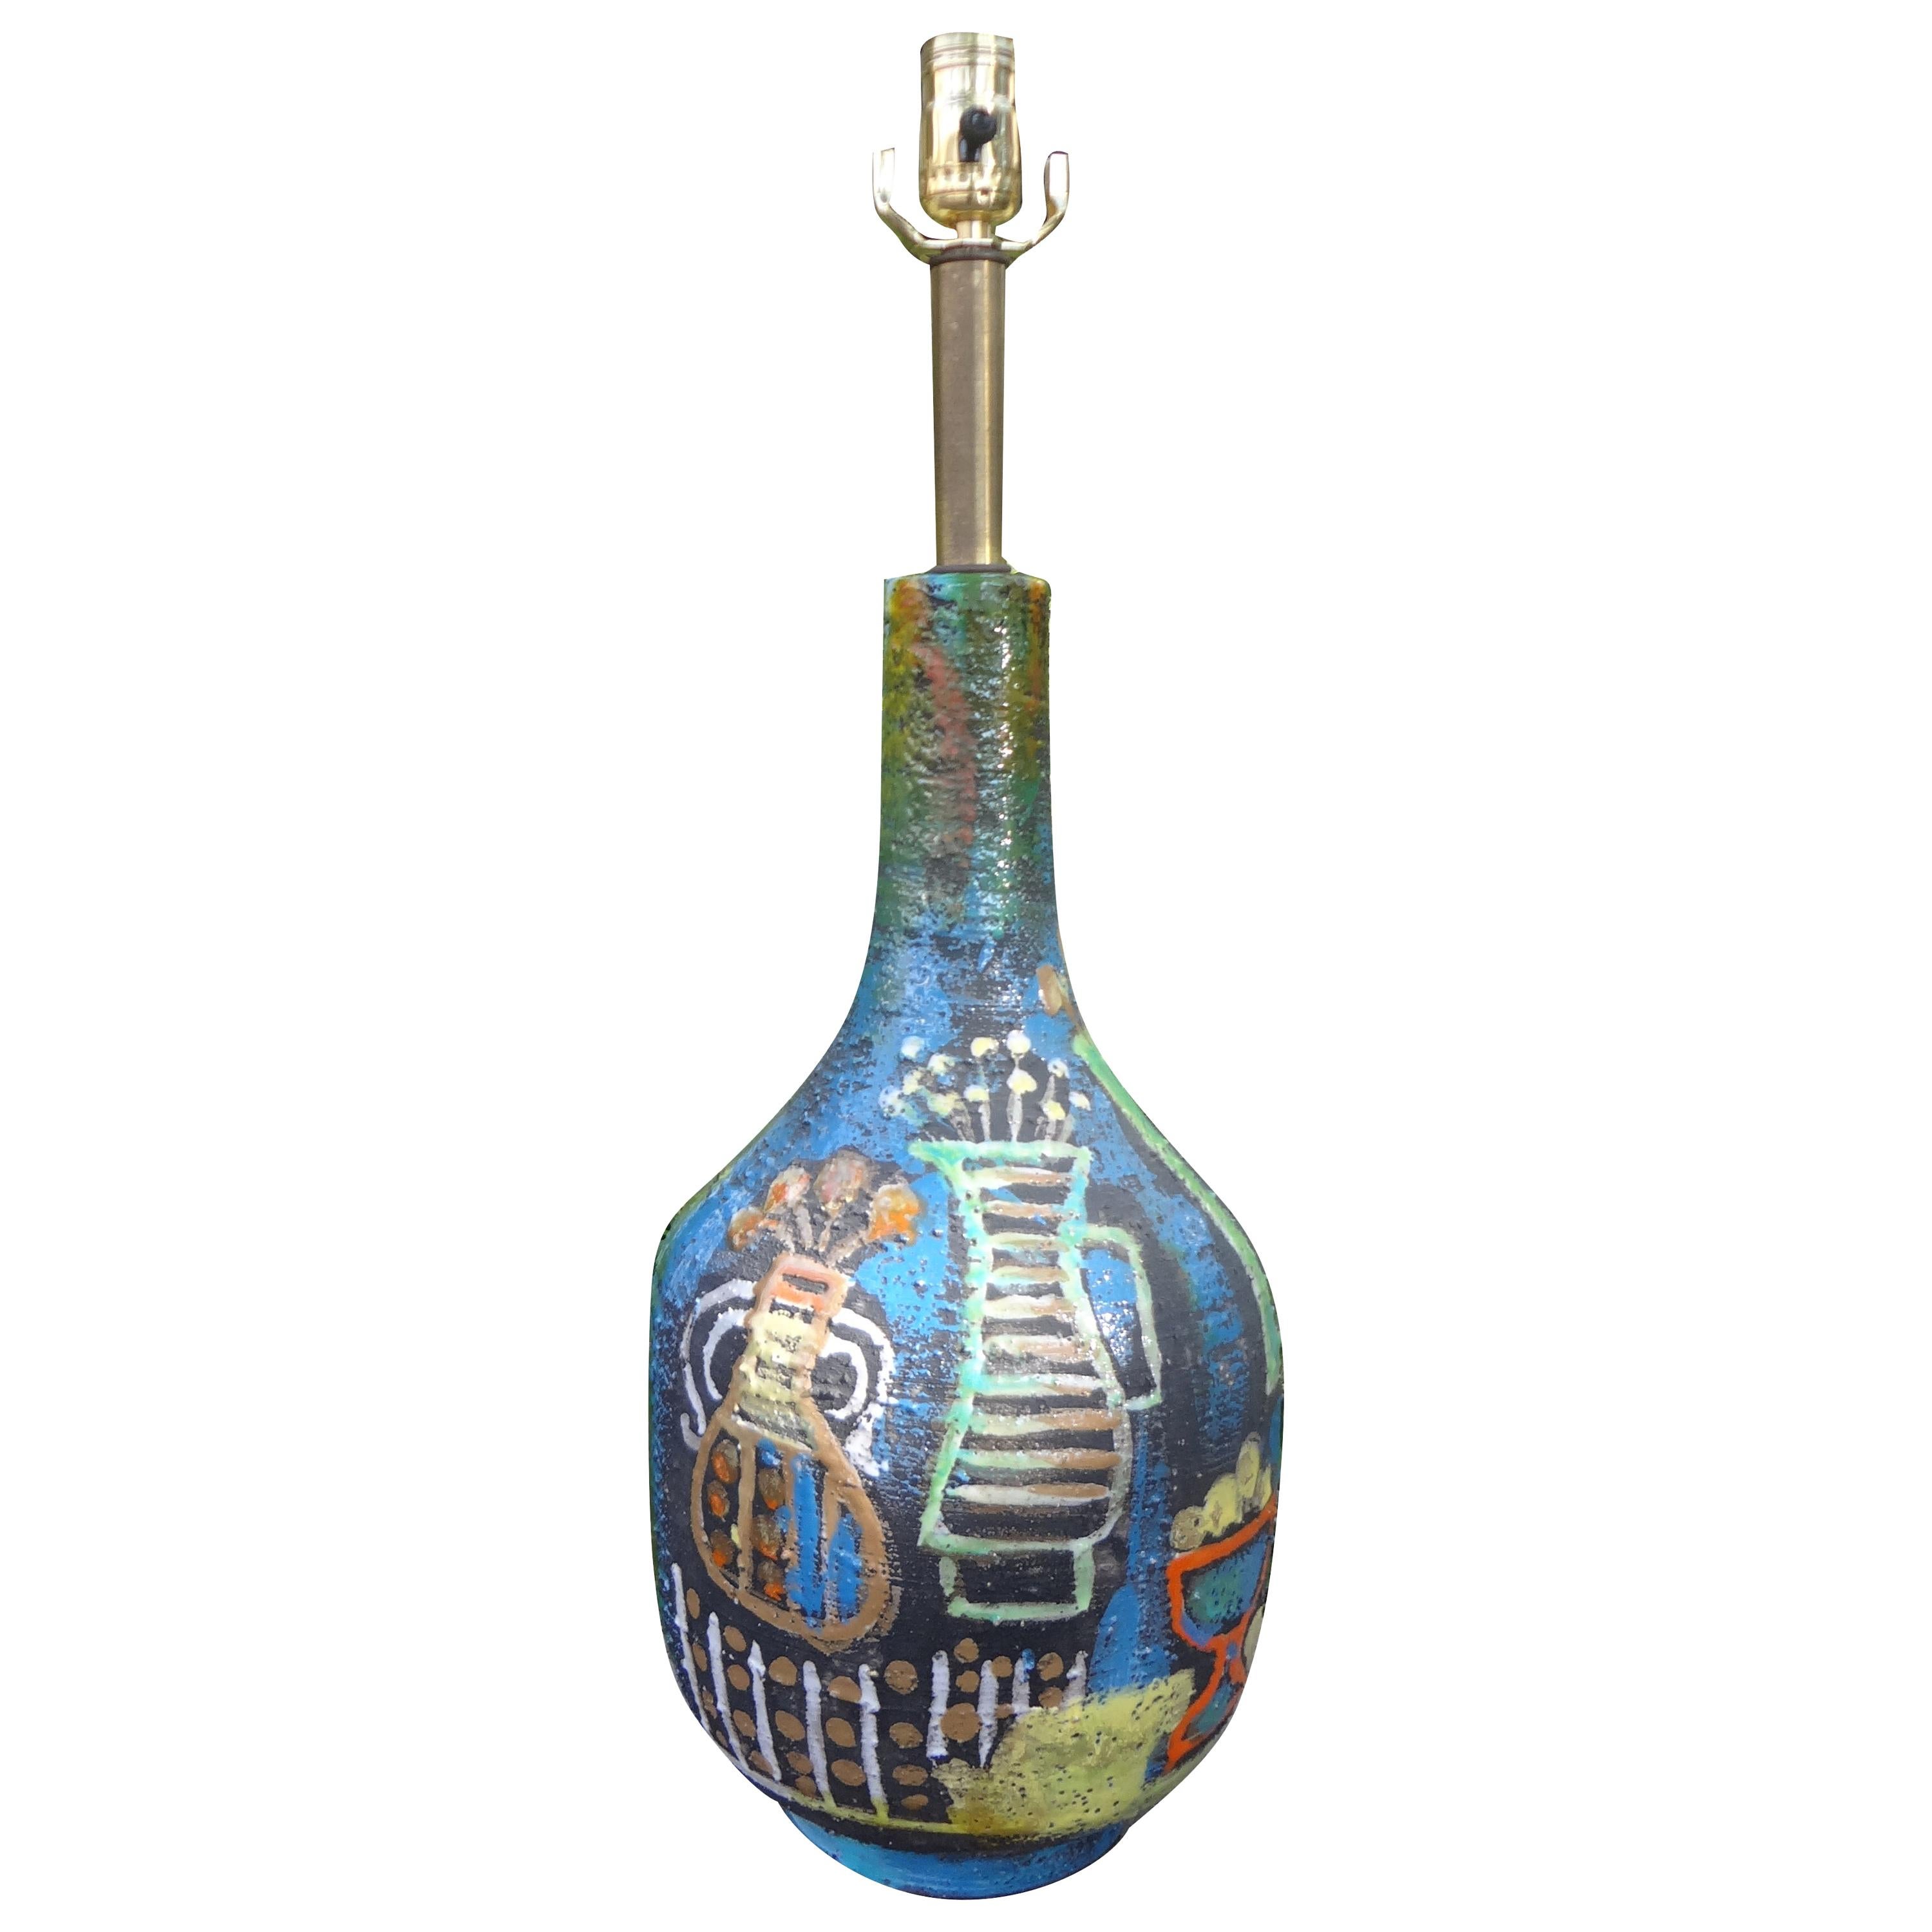 Italian Marcello Fantoni Attributed Glazed Ceramic Lamp